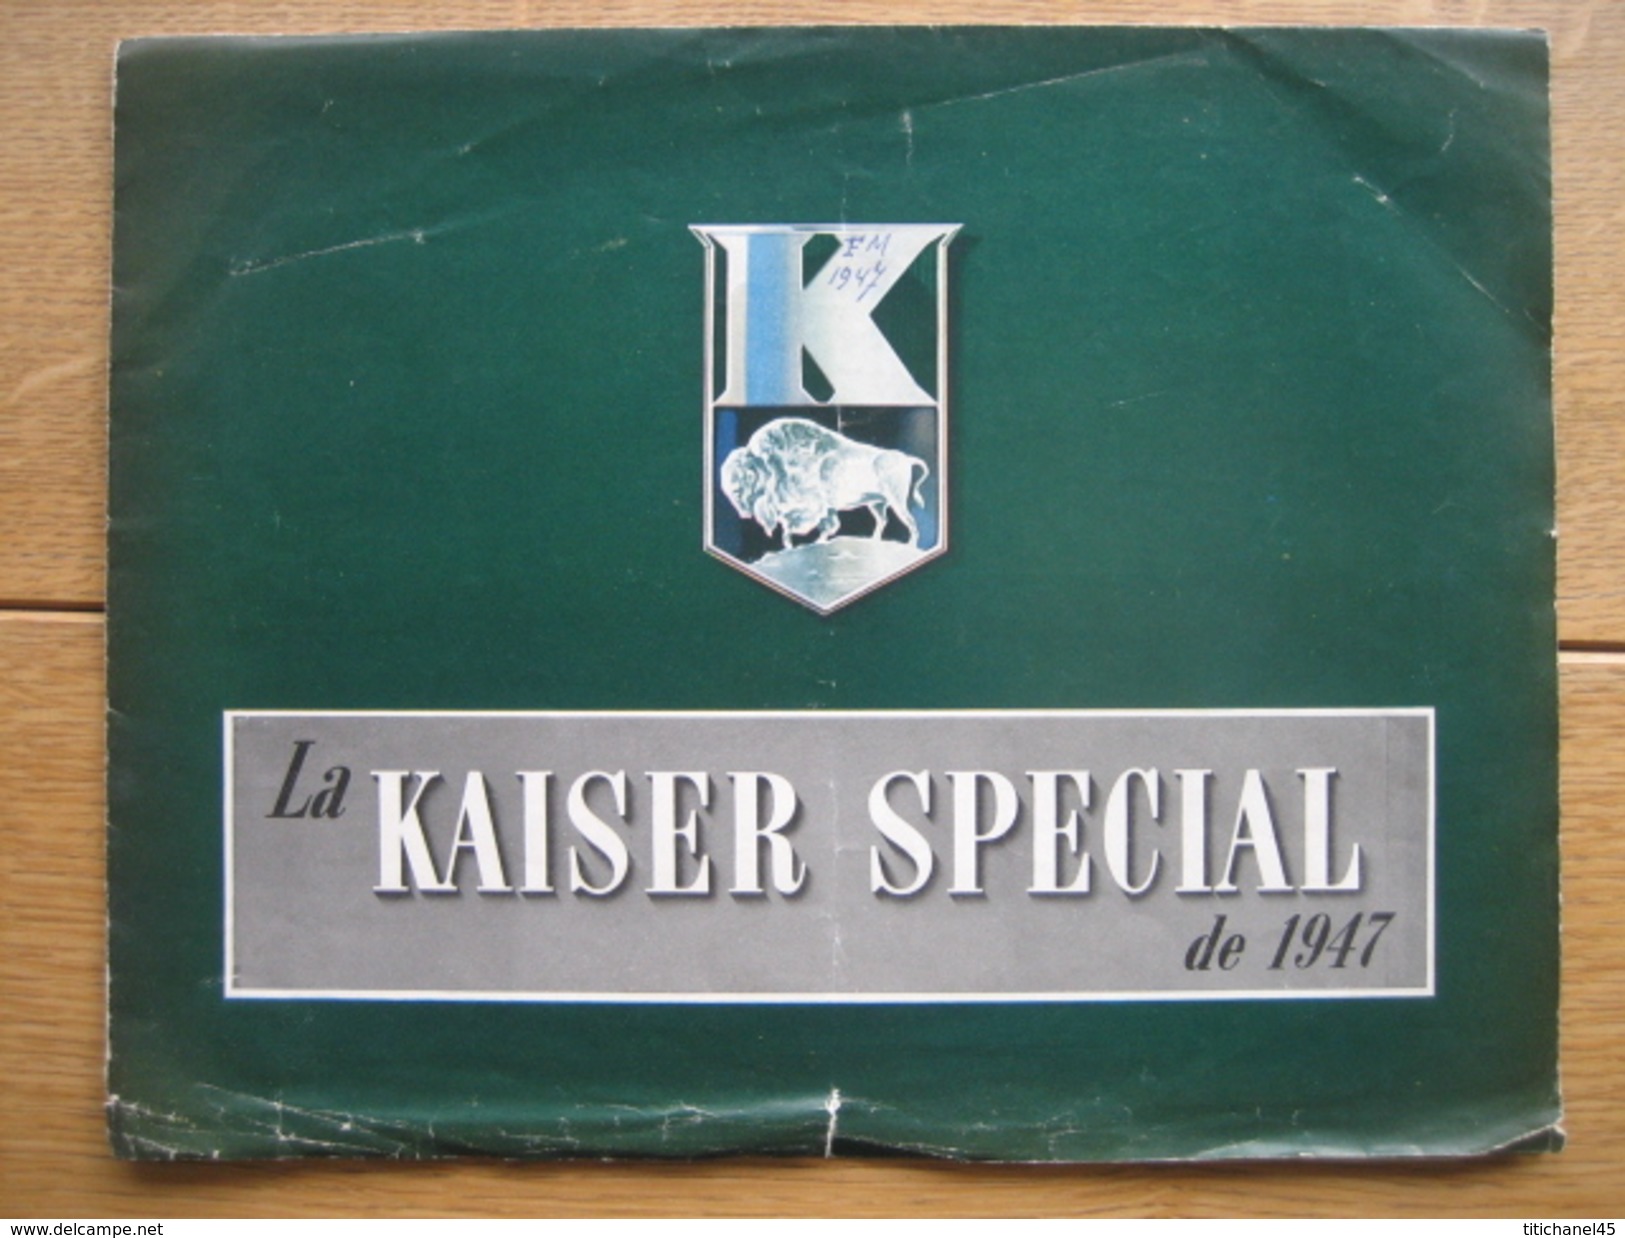 Dépliant Publicitaire De 1946 La KAISER SPECIAL De 1947 - KAISER-FRAZER CORPORATION MICHIGAN - Voitures